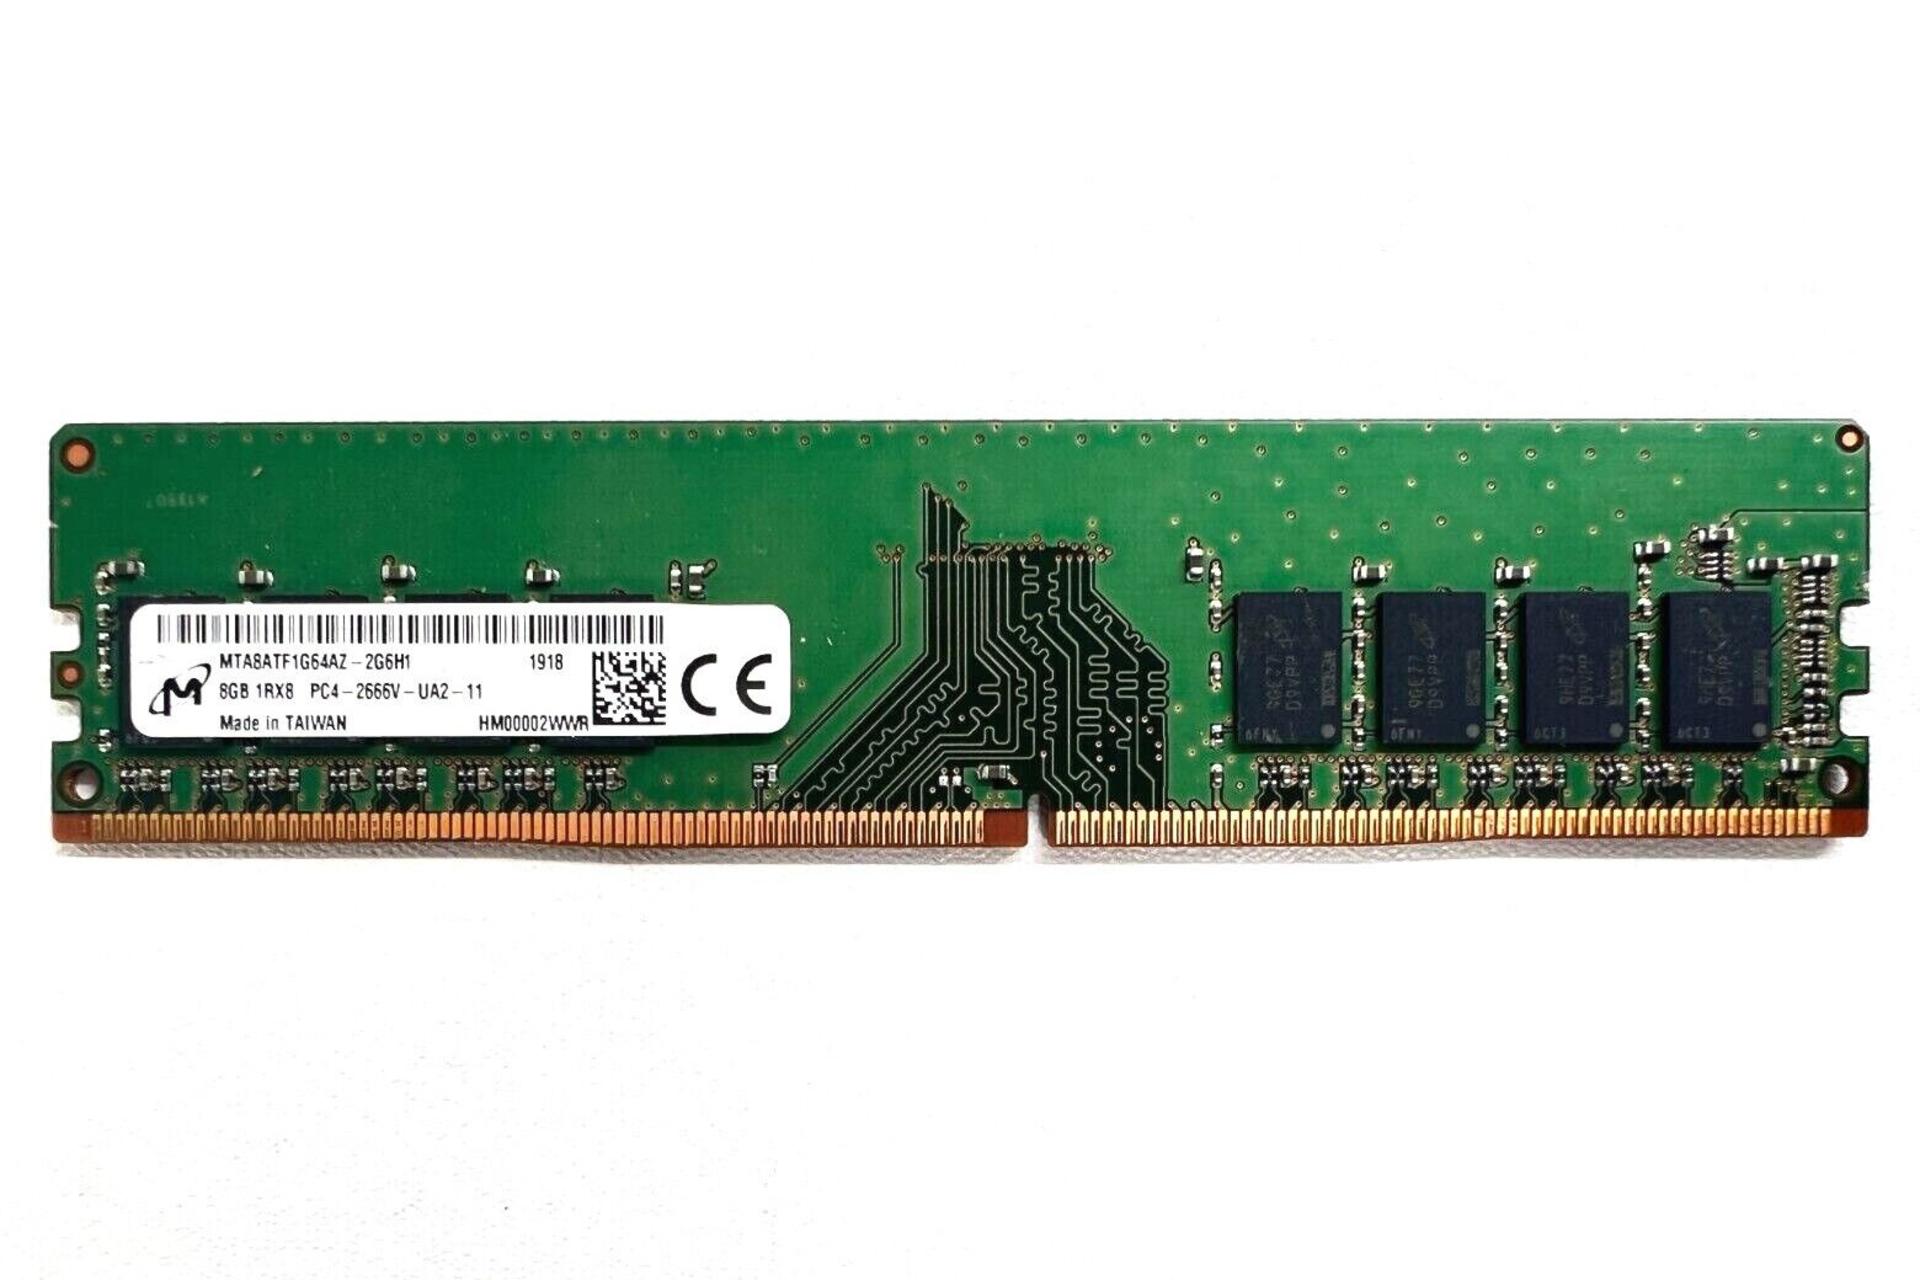 رم مایکرون Micron MTA8ATF1G64AZ-2G6H1 ظرفیت 8 گیگابایت از نوع DDR4-2666 CL19